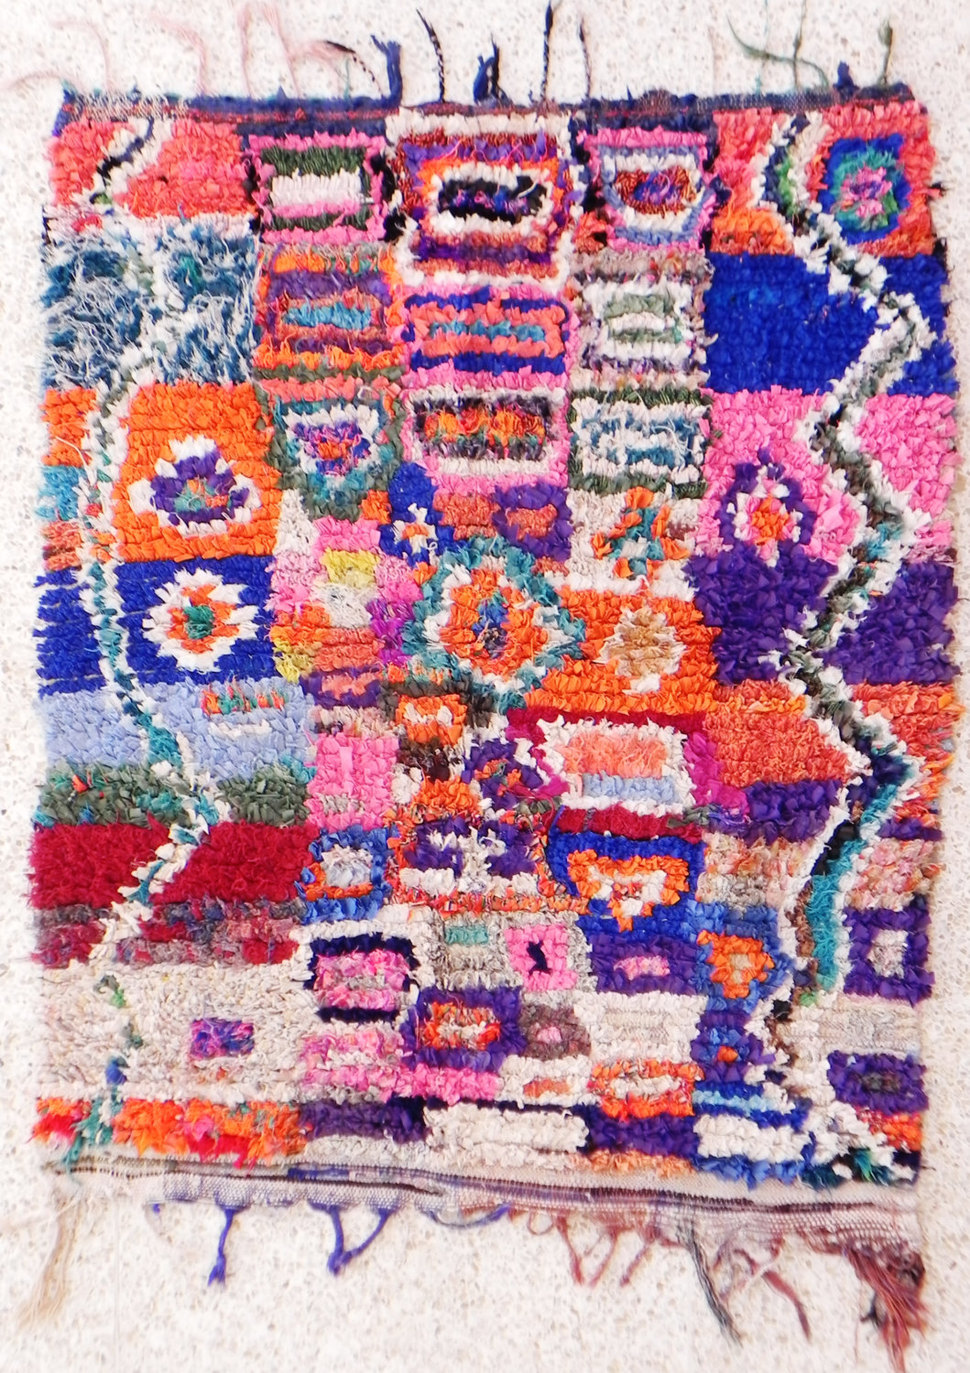 boucharouette-berber-tribal-art-rag-rug-morocco-from-france.jpg